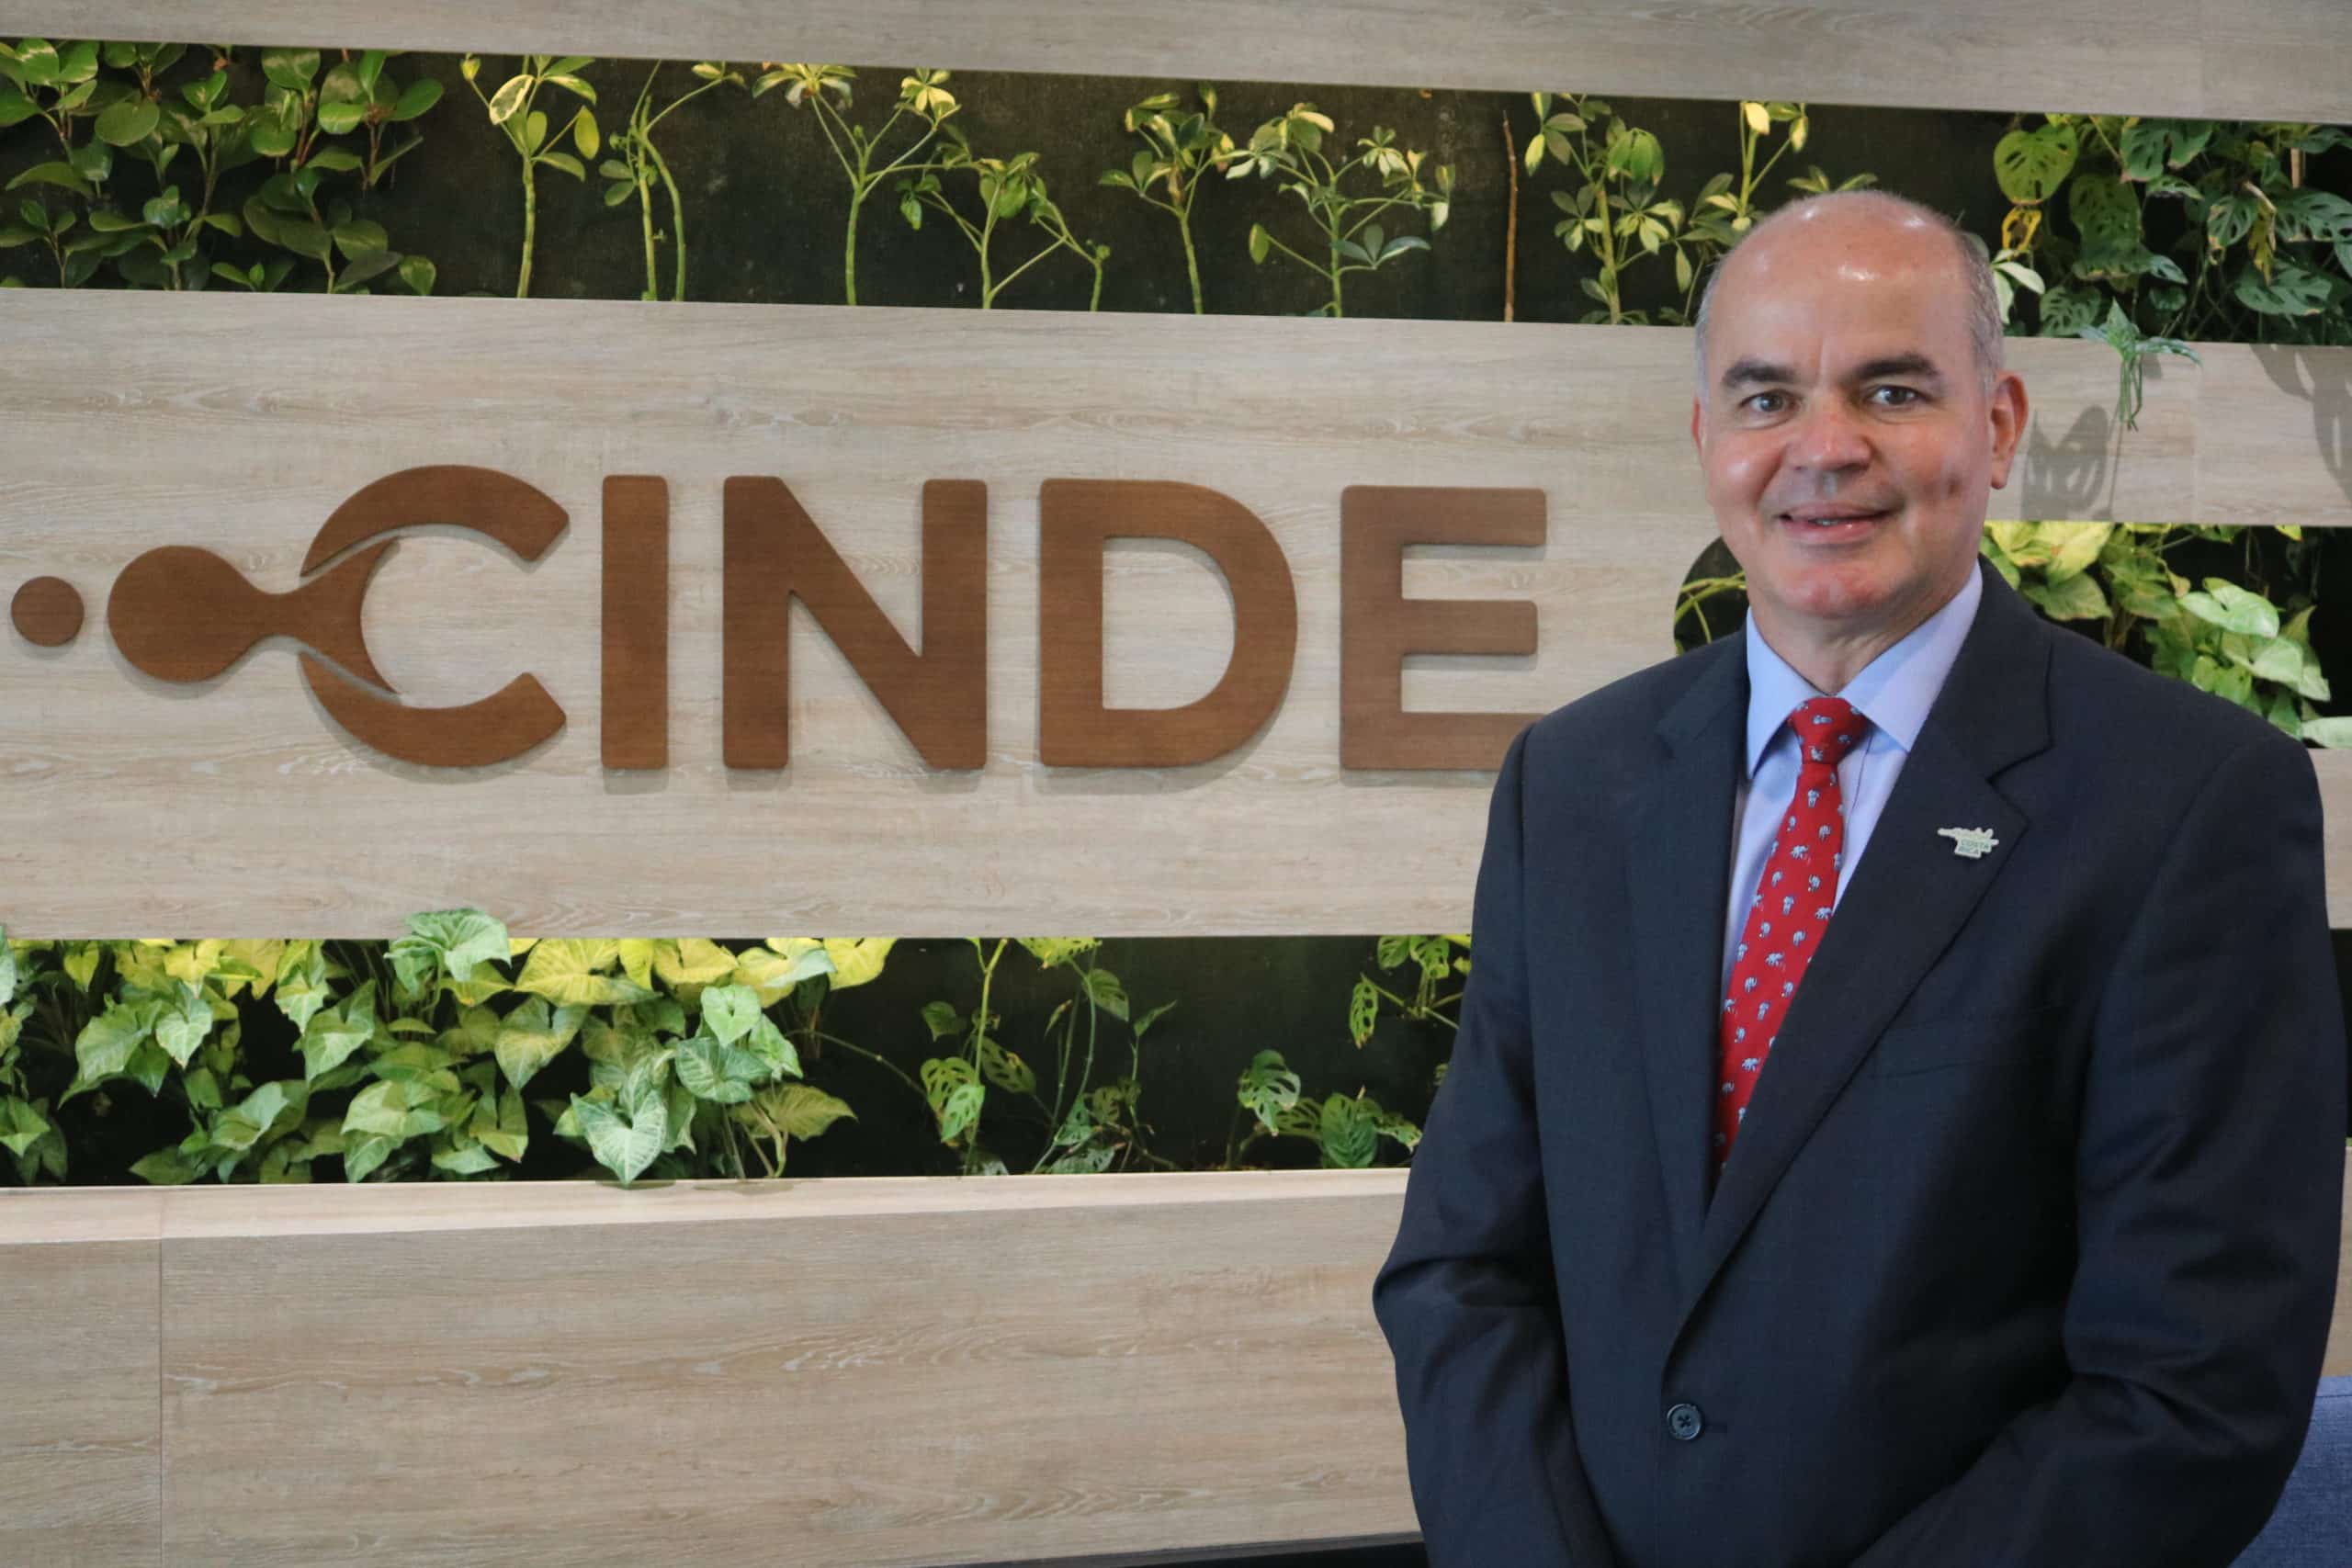 Educación del personal ha sido clave para atraer empresas a Costa Rica pero ahora es principal reto, dice director saliente de Cinde